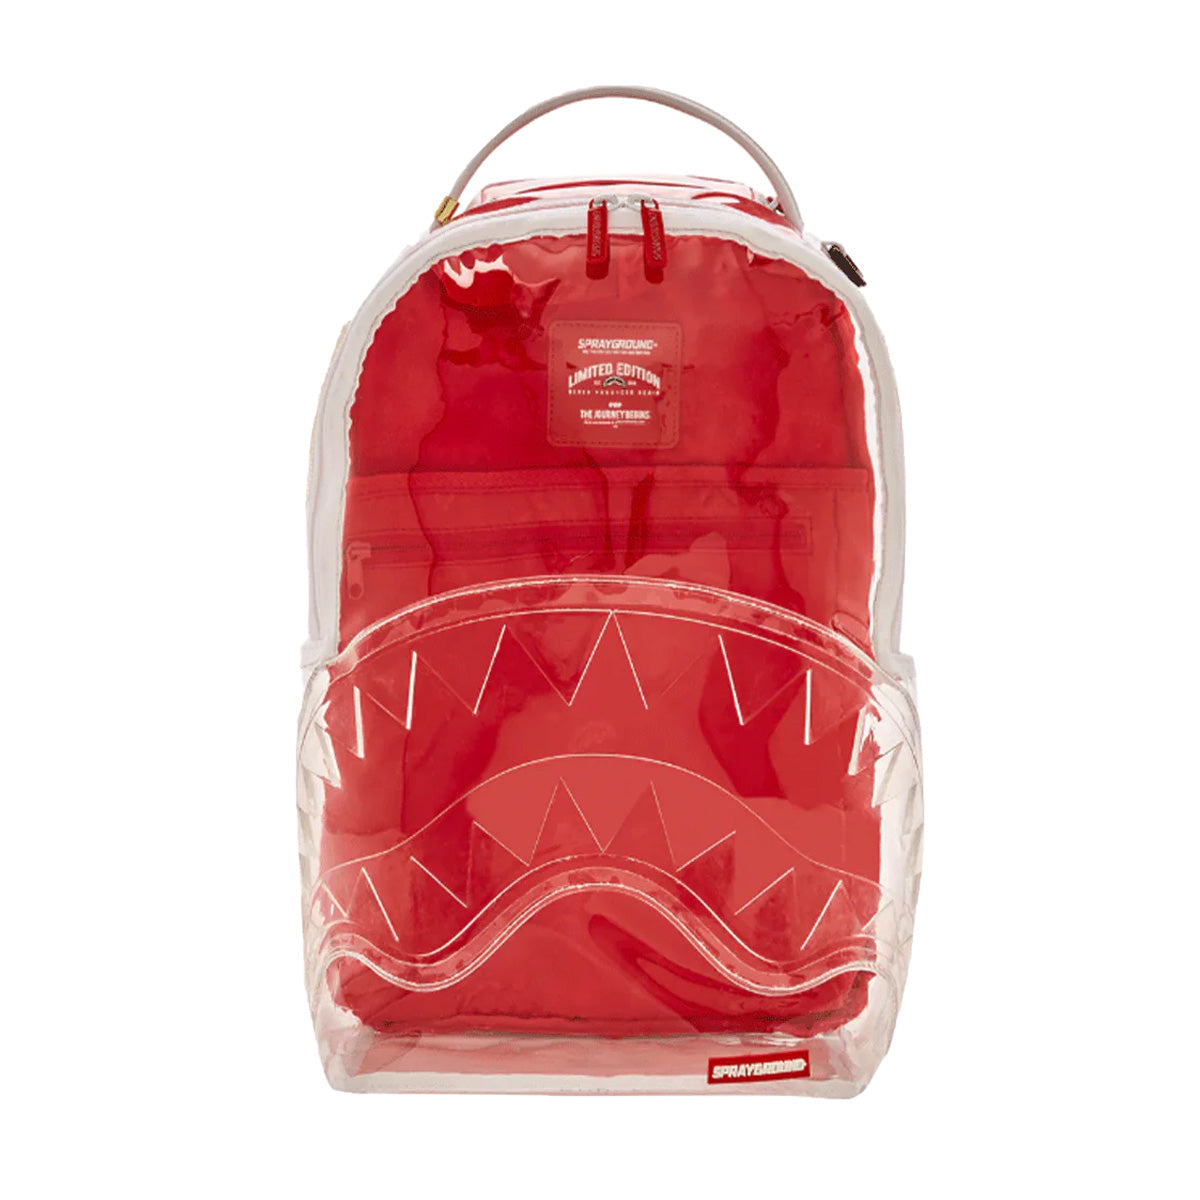 BEST LUGGAGE SETS  Sprayground Designer Bags, Backpacks & More